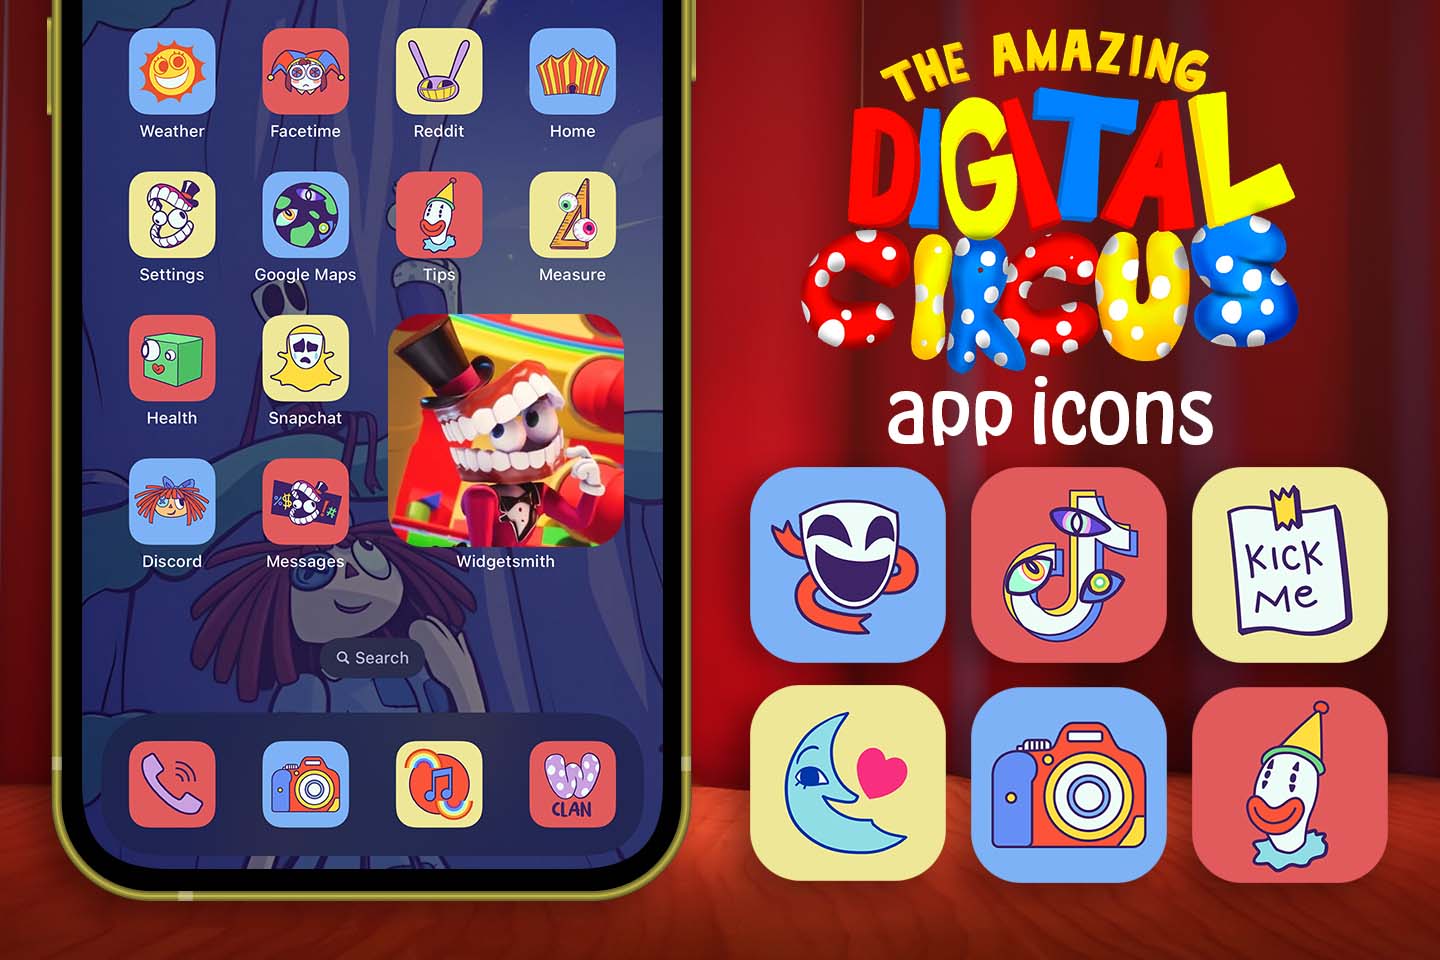 El increíble paquete de iconos de la aplicación Digital Circus